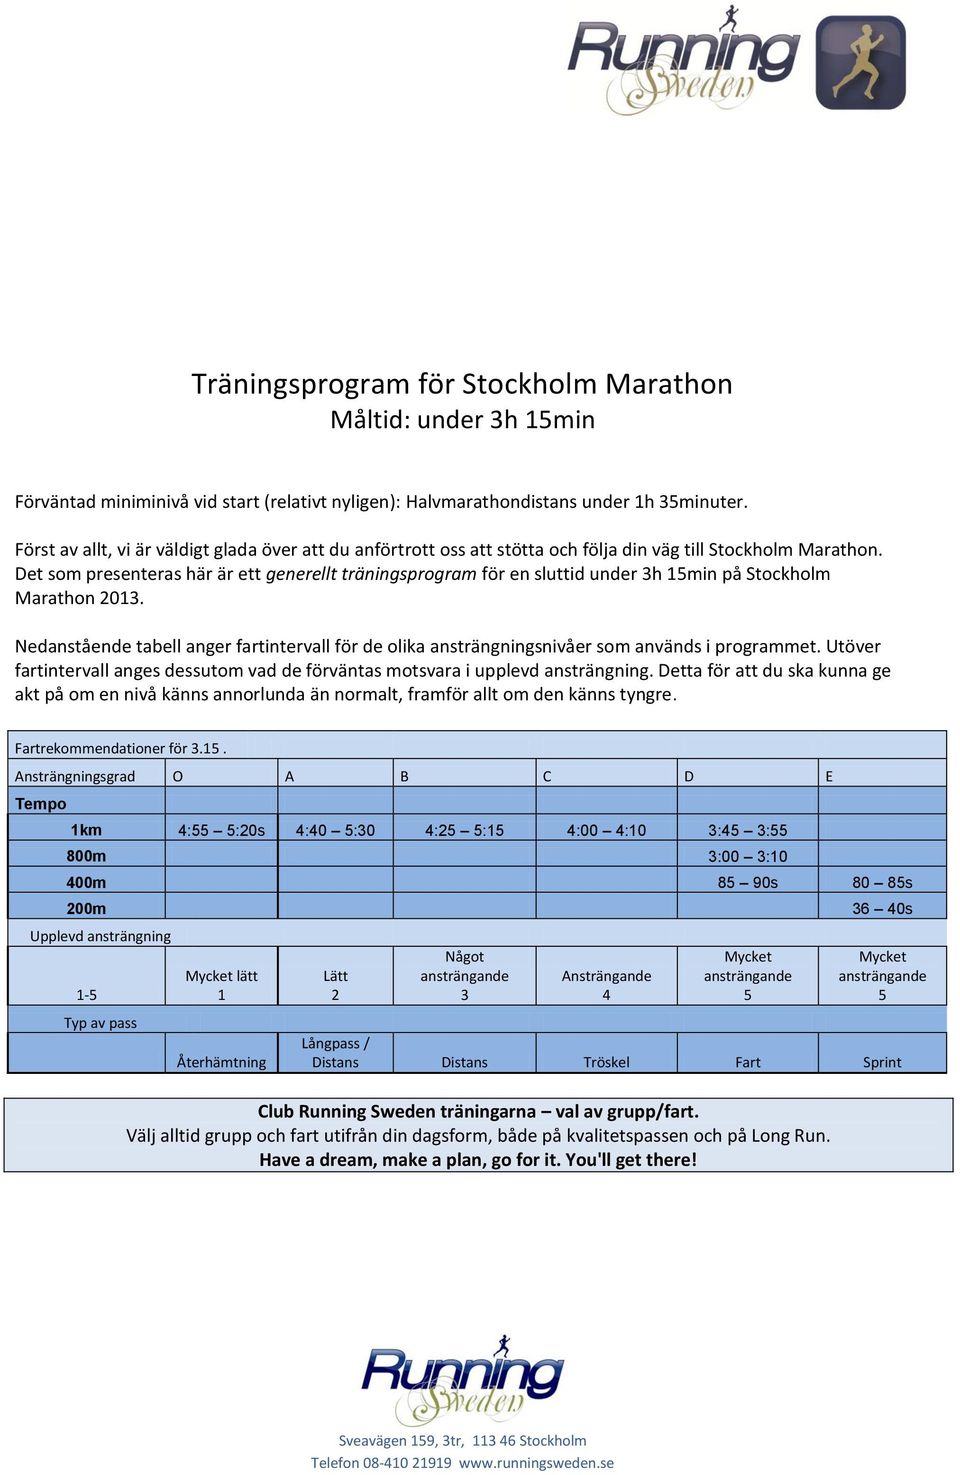 Det som presenteras här är ett generellt träningsprogram för en sluttid under 3h 15min på Stockholm Marathon 2013.